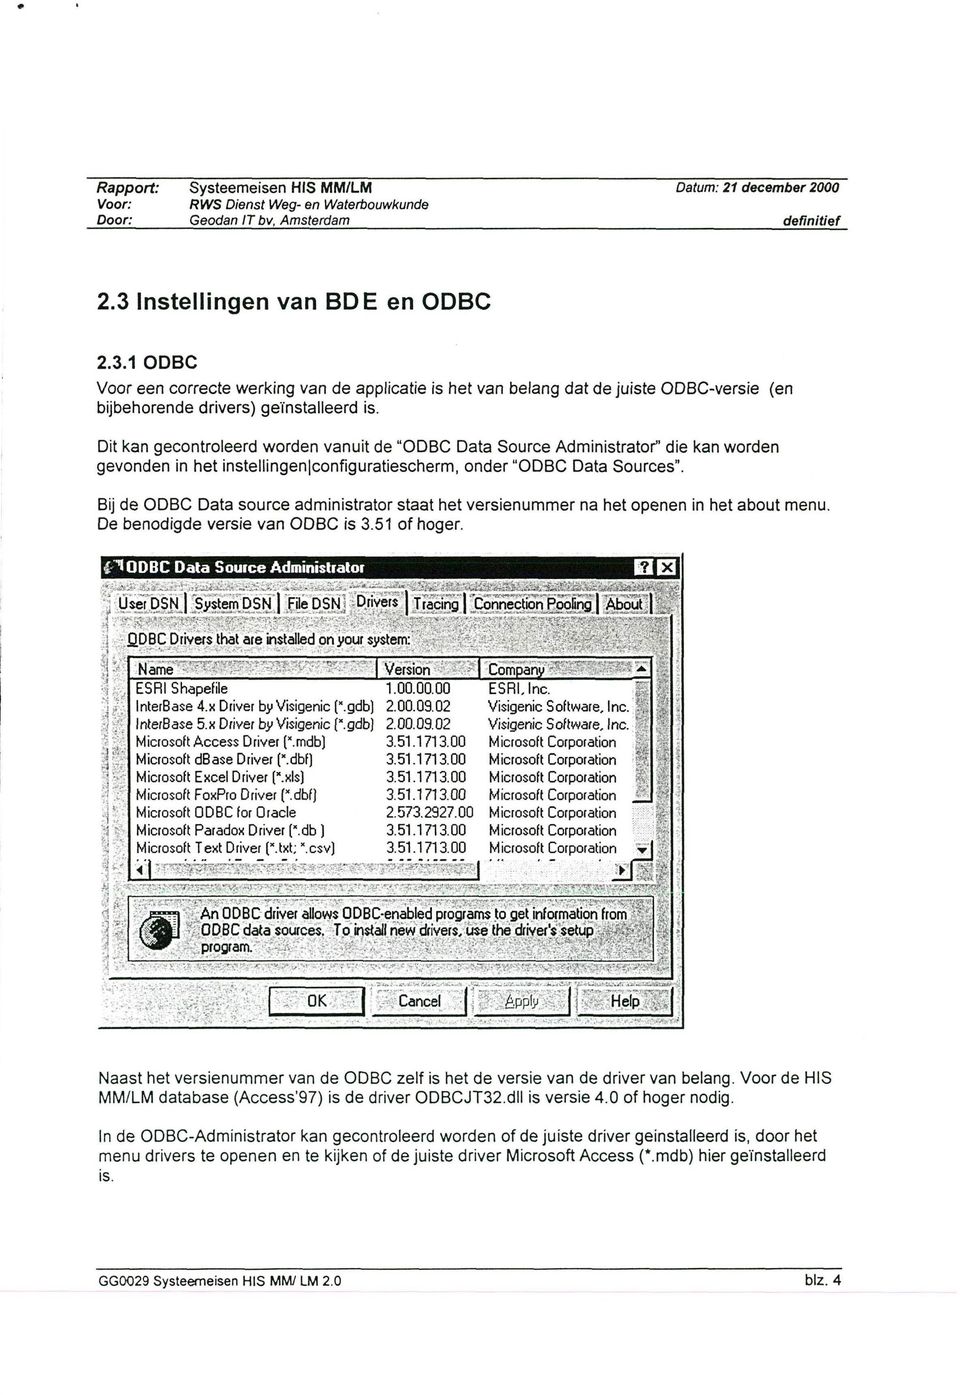 Bij de ODBC Data source administrator staat het versienummer na het openen in het about menu. De benodigde versie van ODBC is 3.51 of hoger.